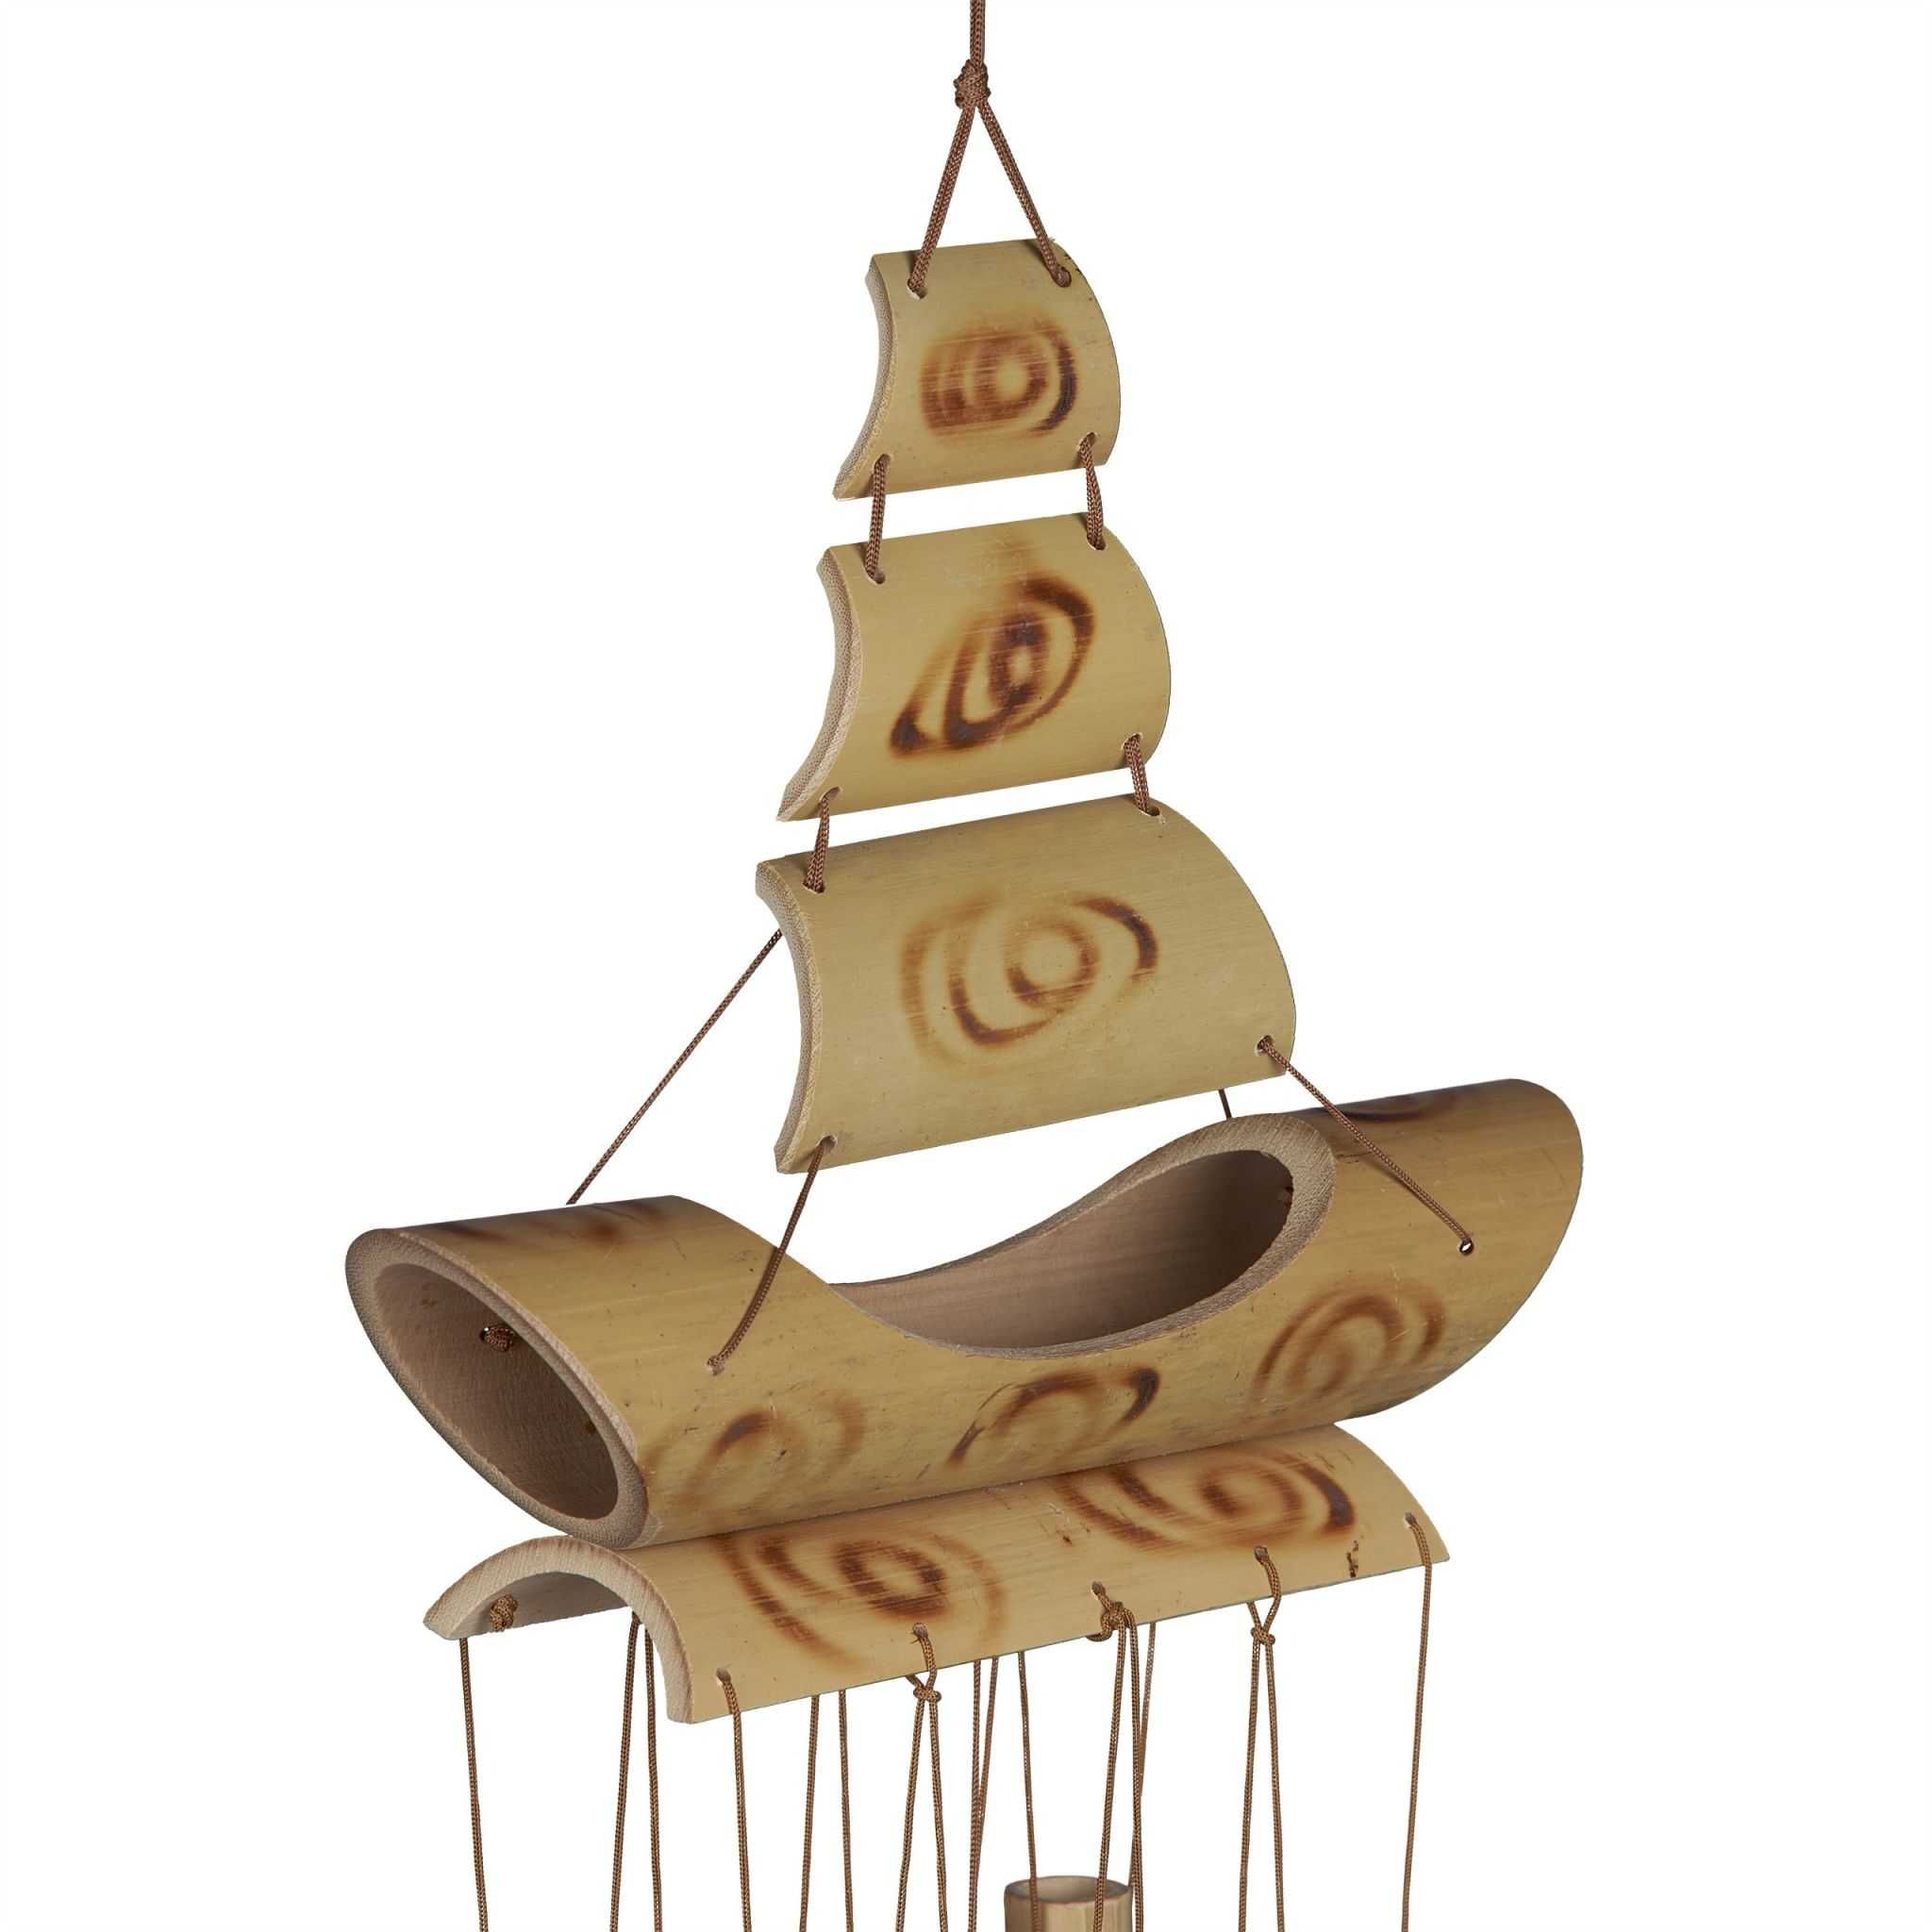 Clopot de vant din bambus rezistent model barca cu vele 66 x 19 x 7 cm